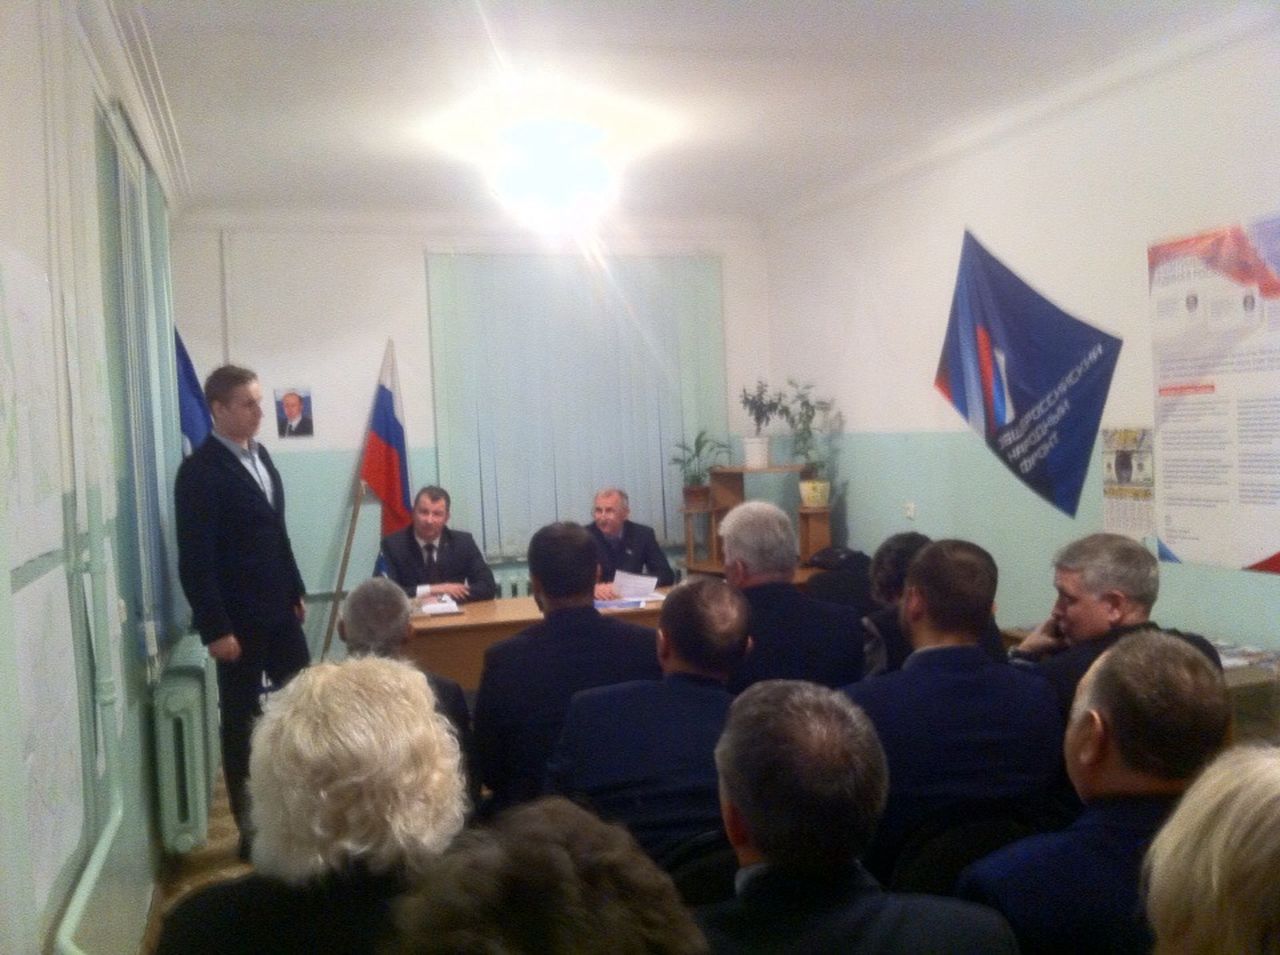 В Серове состоялось заседание политсовета "Единой России". Партия власти начинает готовиться к выборам